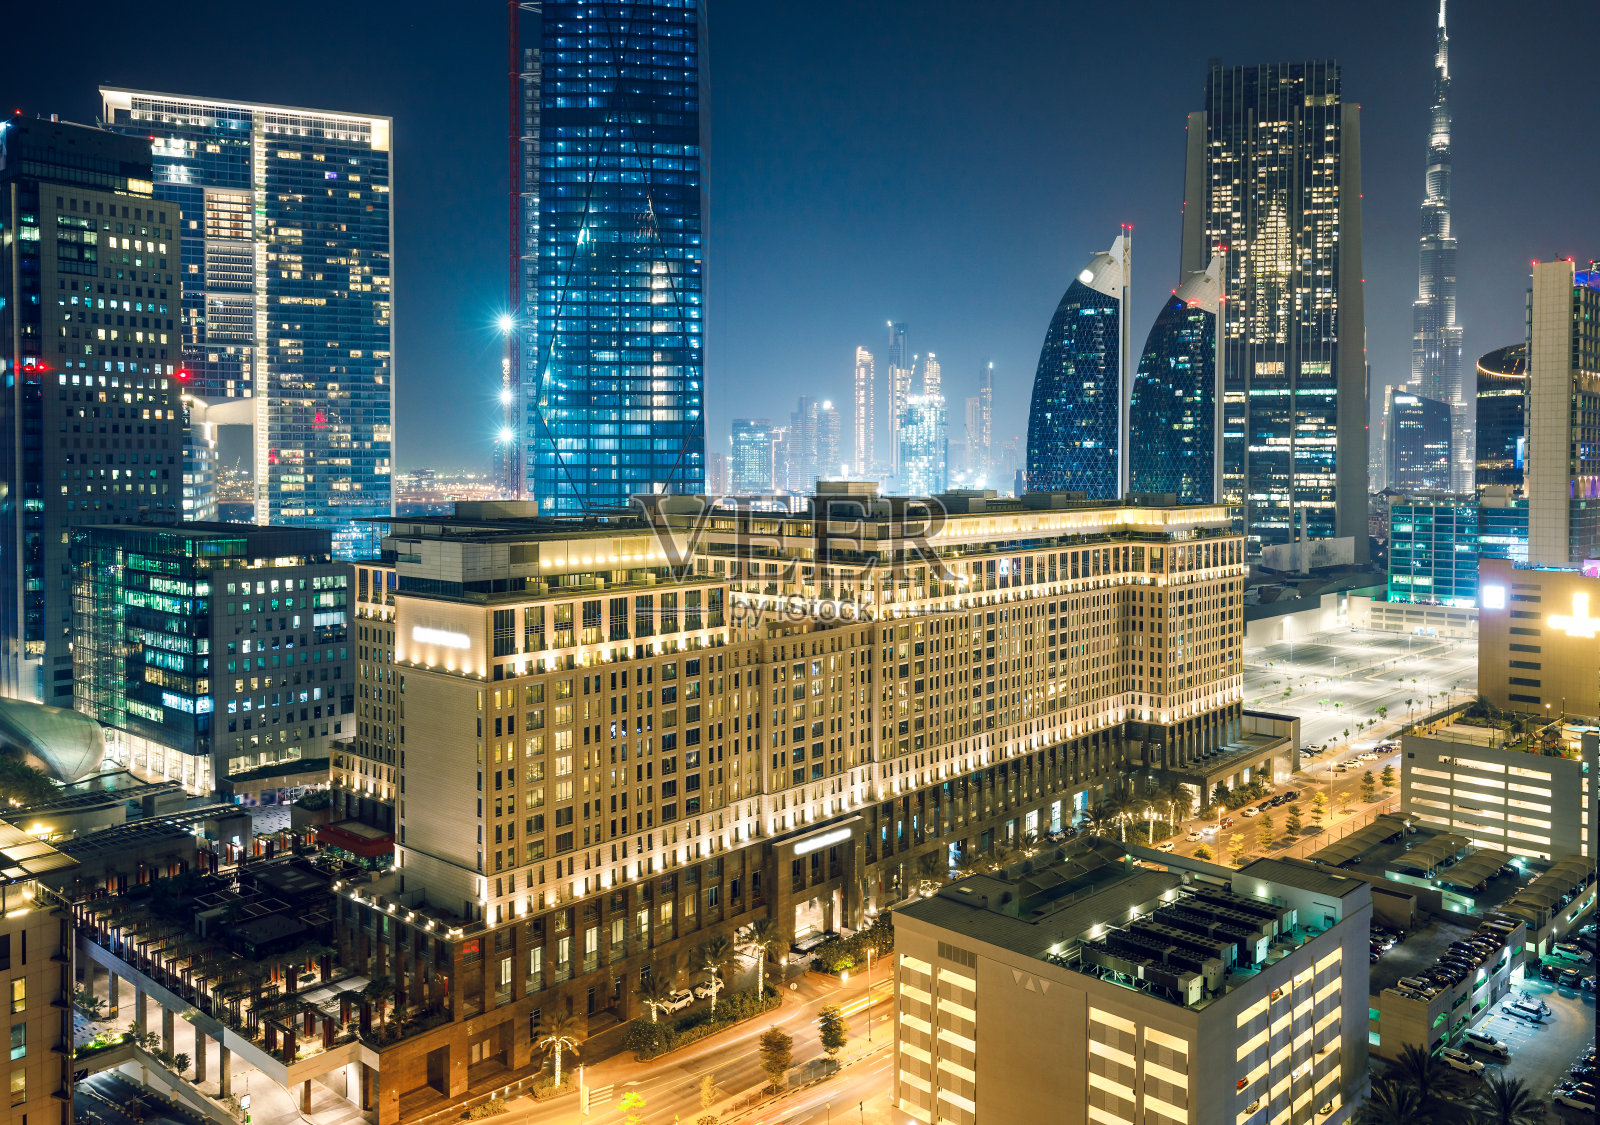 阿联酋迪拜市中心夜间鸟瞰图照片摄影图片